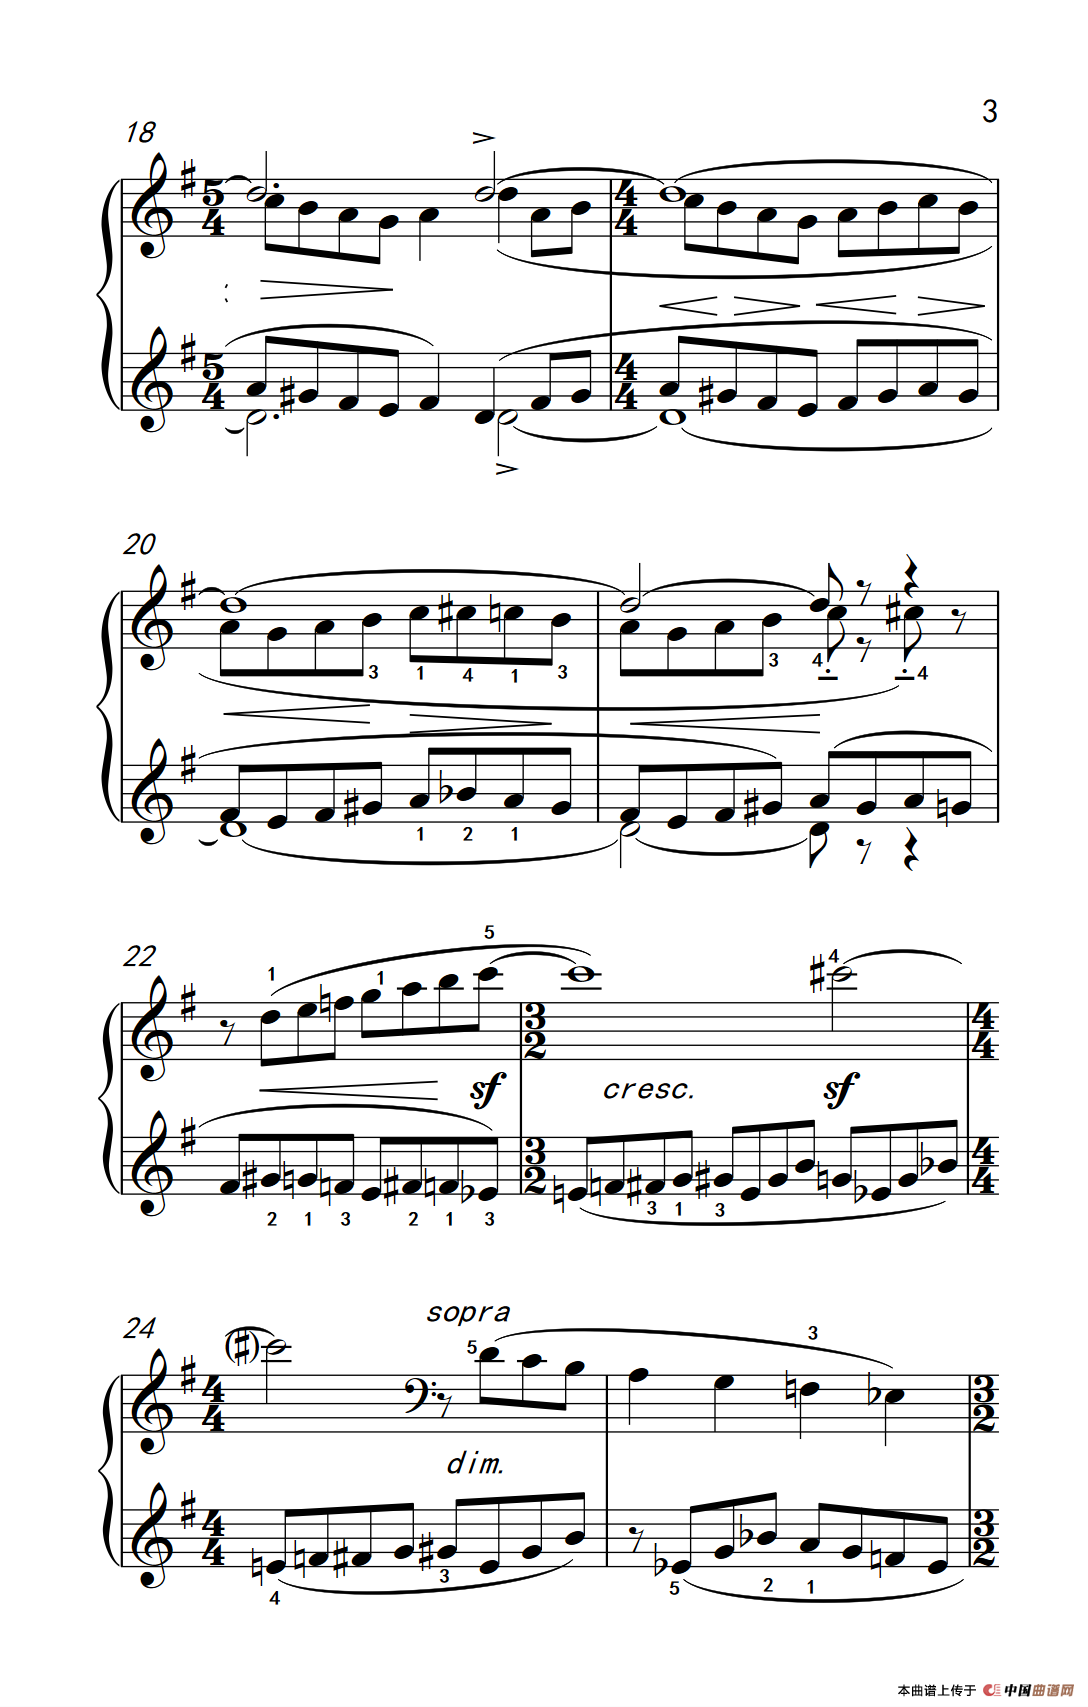 《布列舞曲》钢琴曲谱图分享